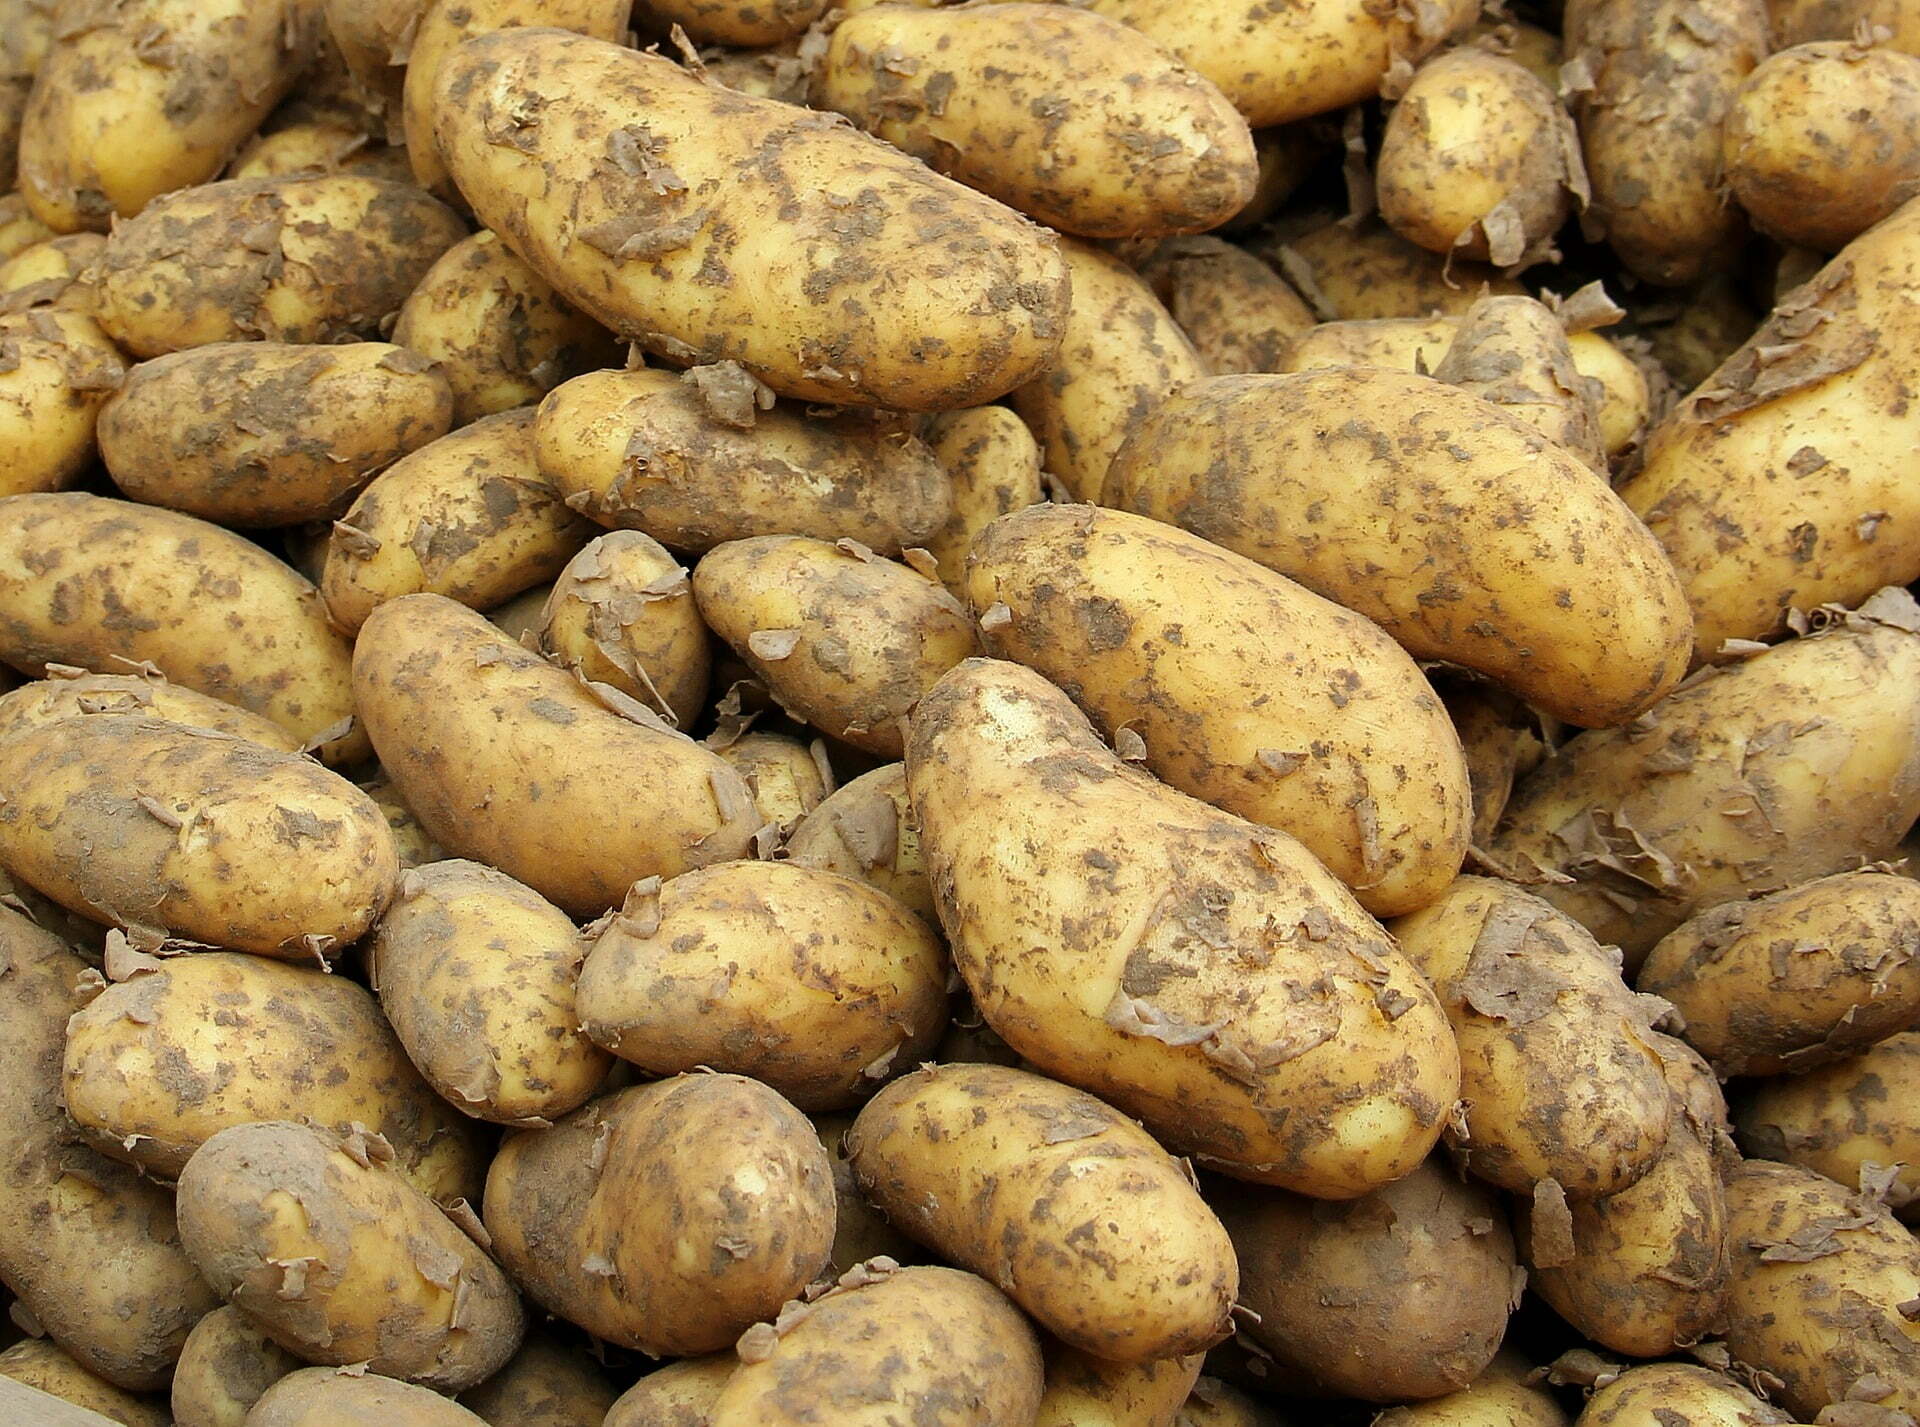 Prohibición del clorprofam como antigerminante de patatas